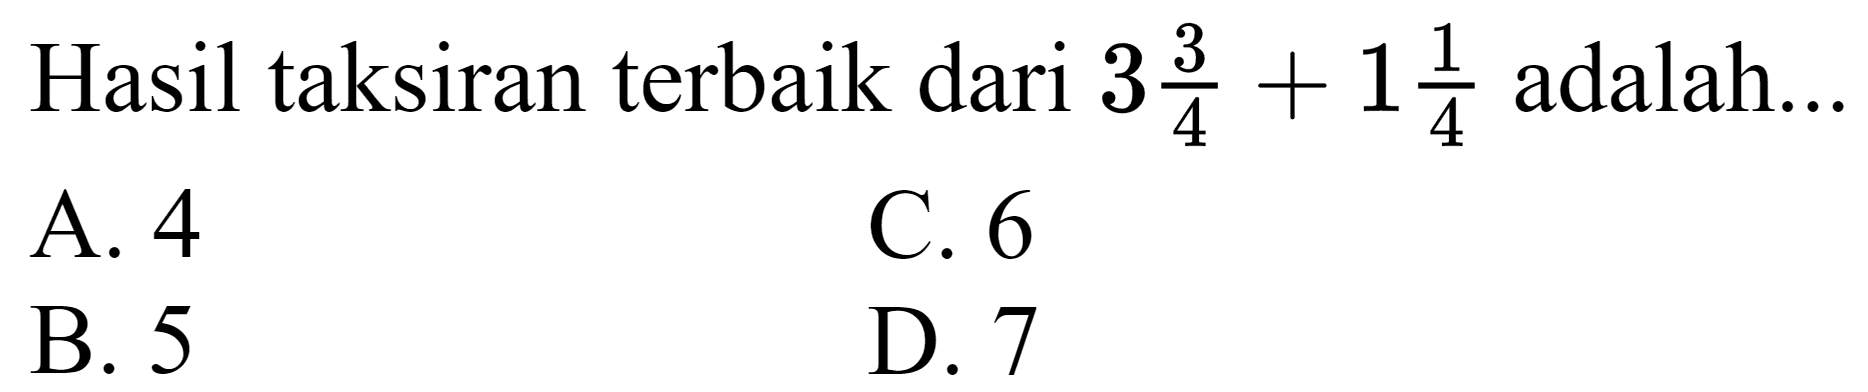 Hasil taksiran terbaik dari  3 (3)/(4)+1 (1)/(4)  adalah...
A. 4
C. 6
B. 5
D. 7